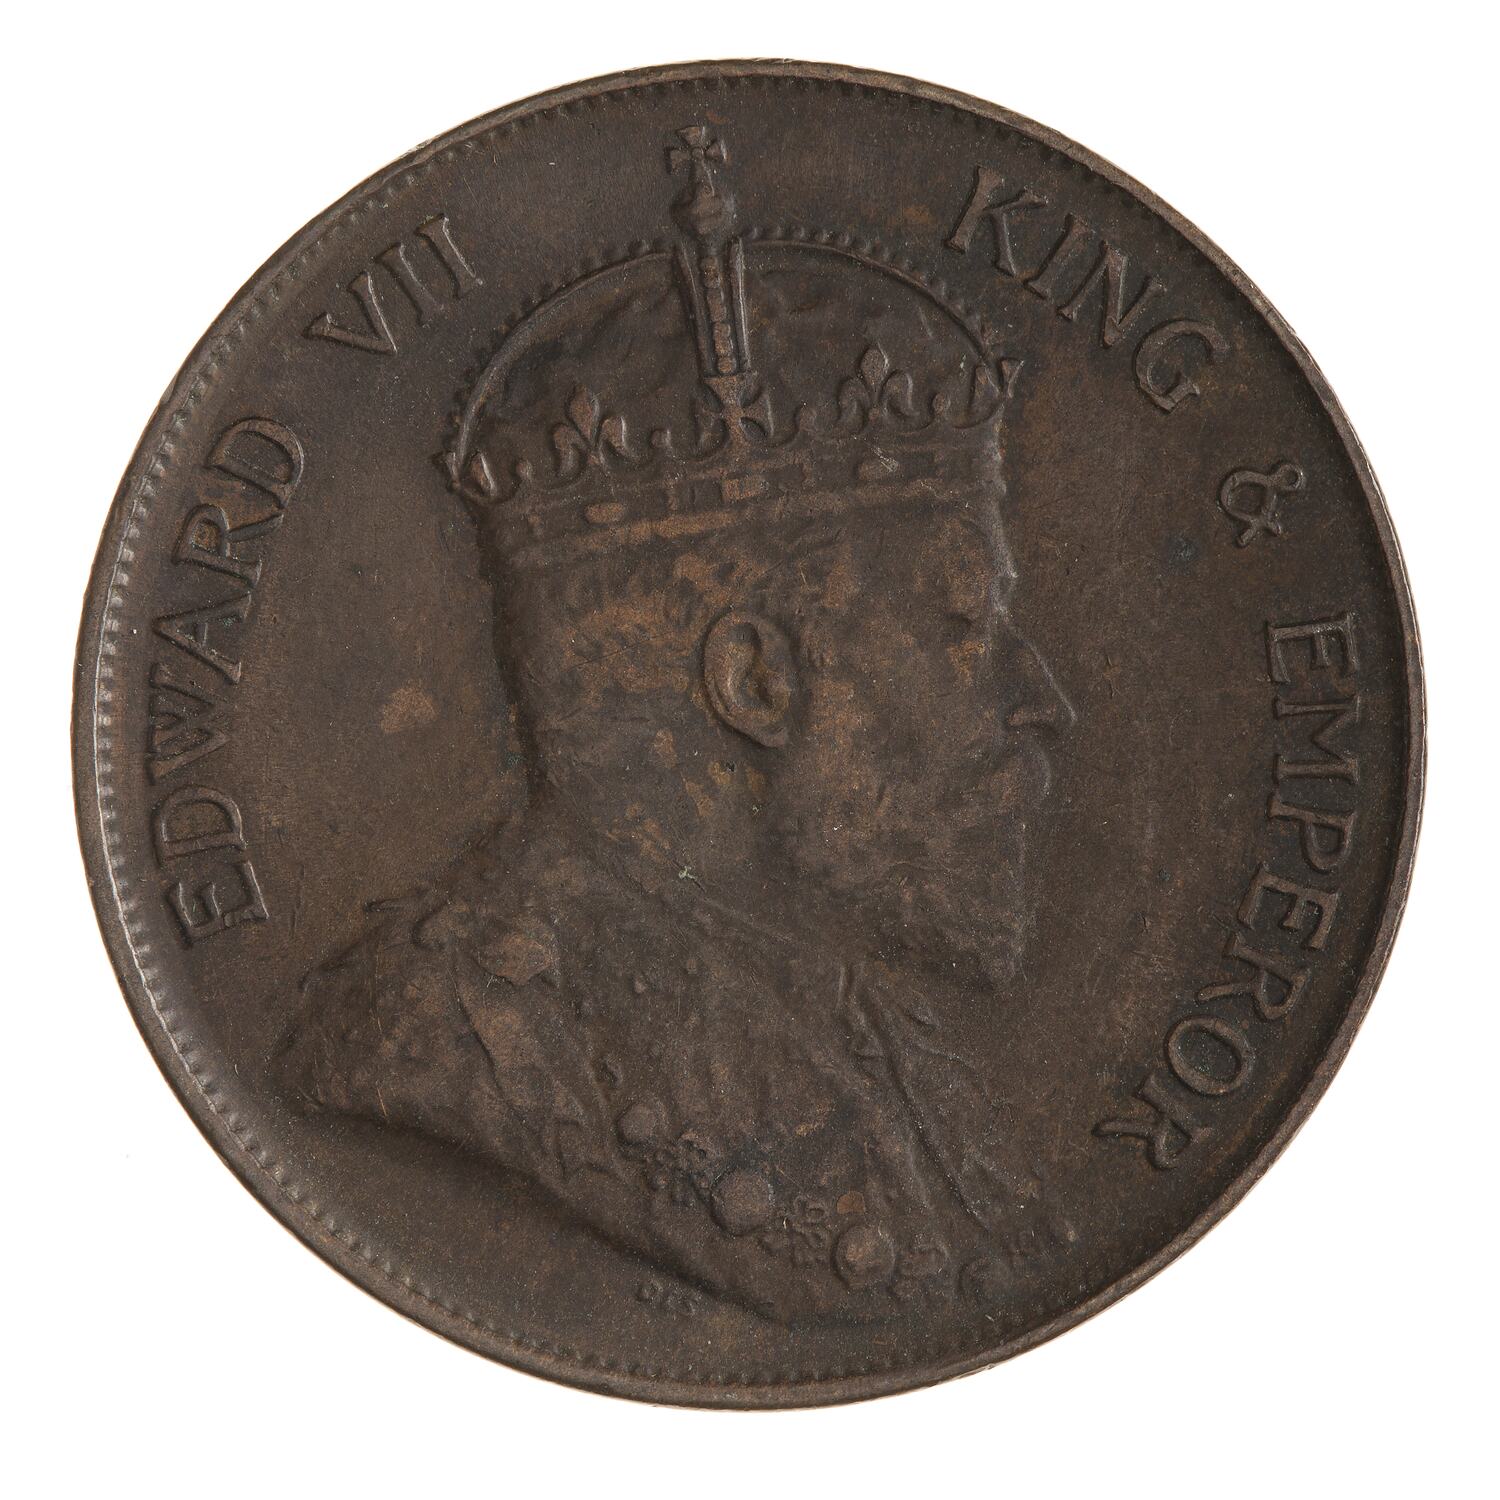 1 Cent, Hong Kong, 1905 - Coin